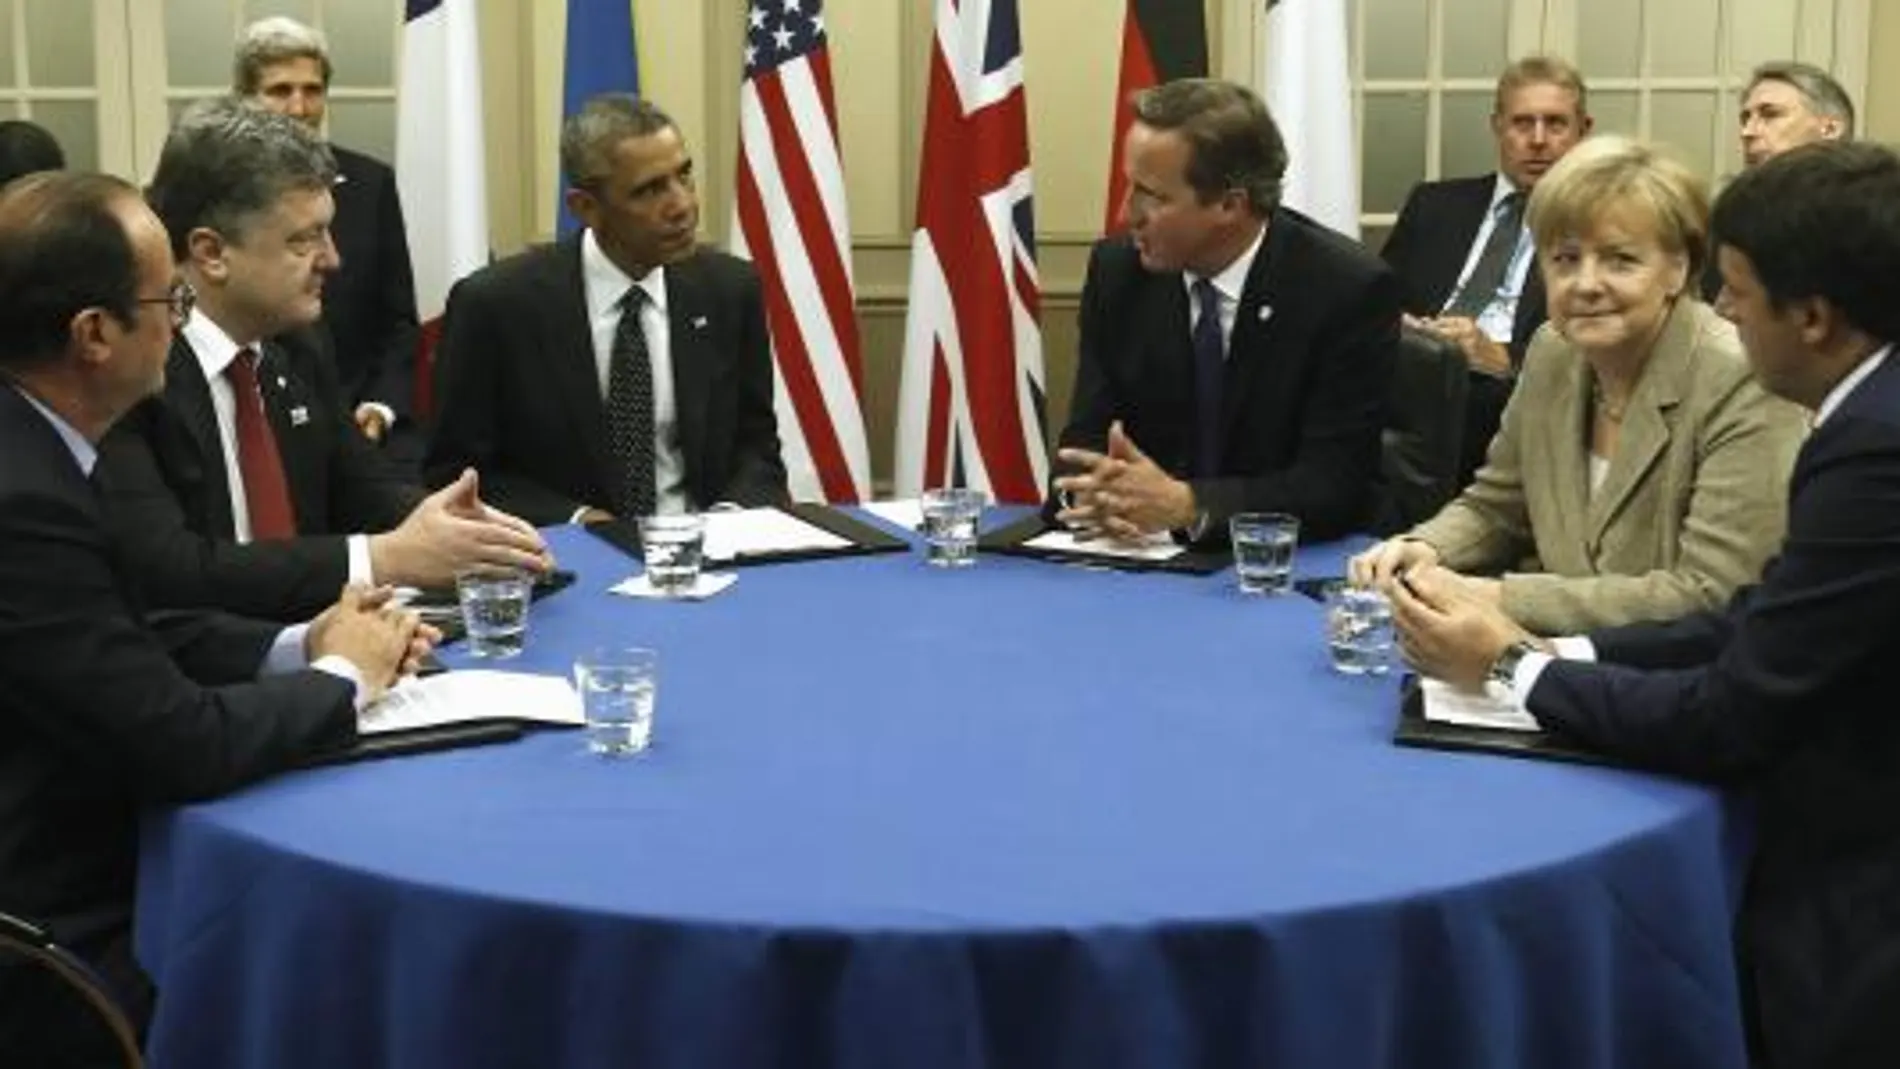 Barack Obama aborda la situación en Ucrania con Francois Hollande, Porpshenko, Obama, David Cameron, Angela Merkel y Matteo Renzi.